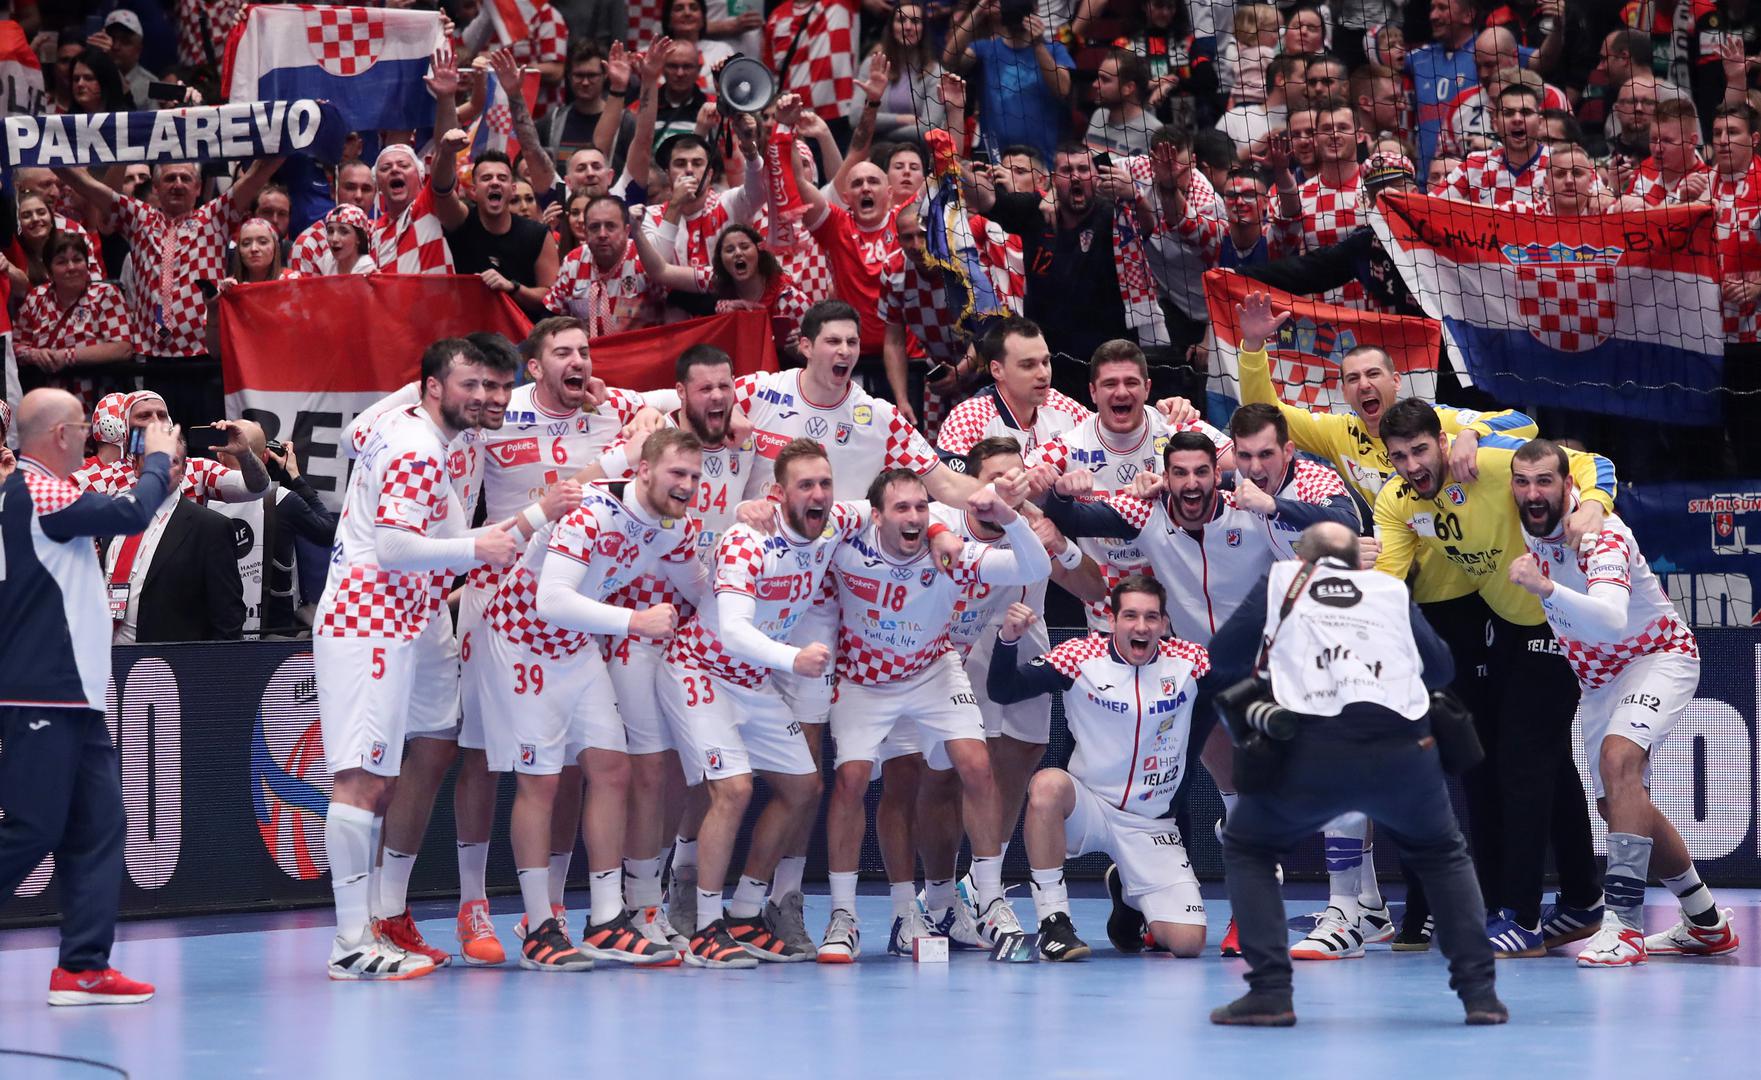 Hrvatski rukometaši su u fantastičnoj završnici pobjedom protiv Njemačke (25:24) osigurali polufinale EP-a